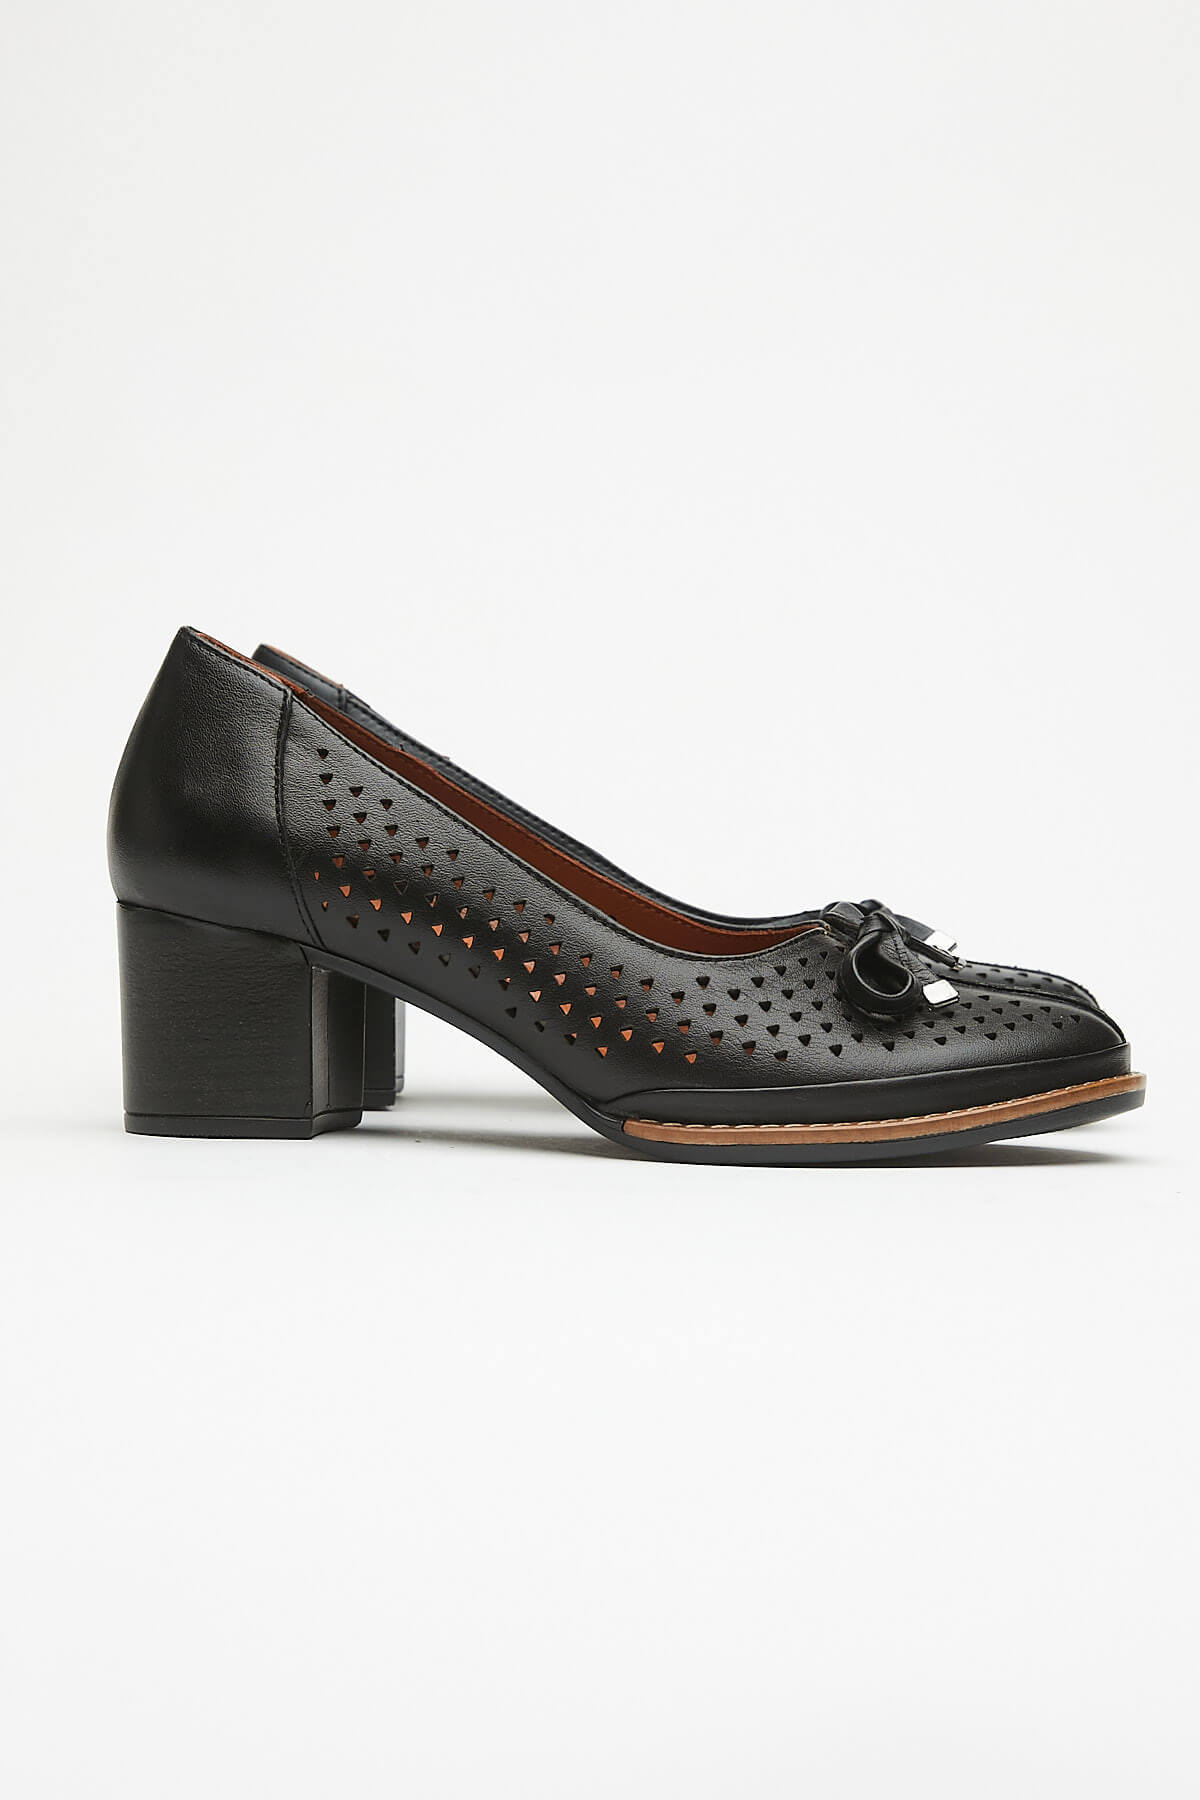 Kadın Topuklu Deri Ayakkabı Siyah 2113301Y - Thumbnail